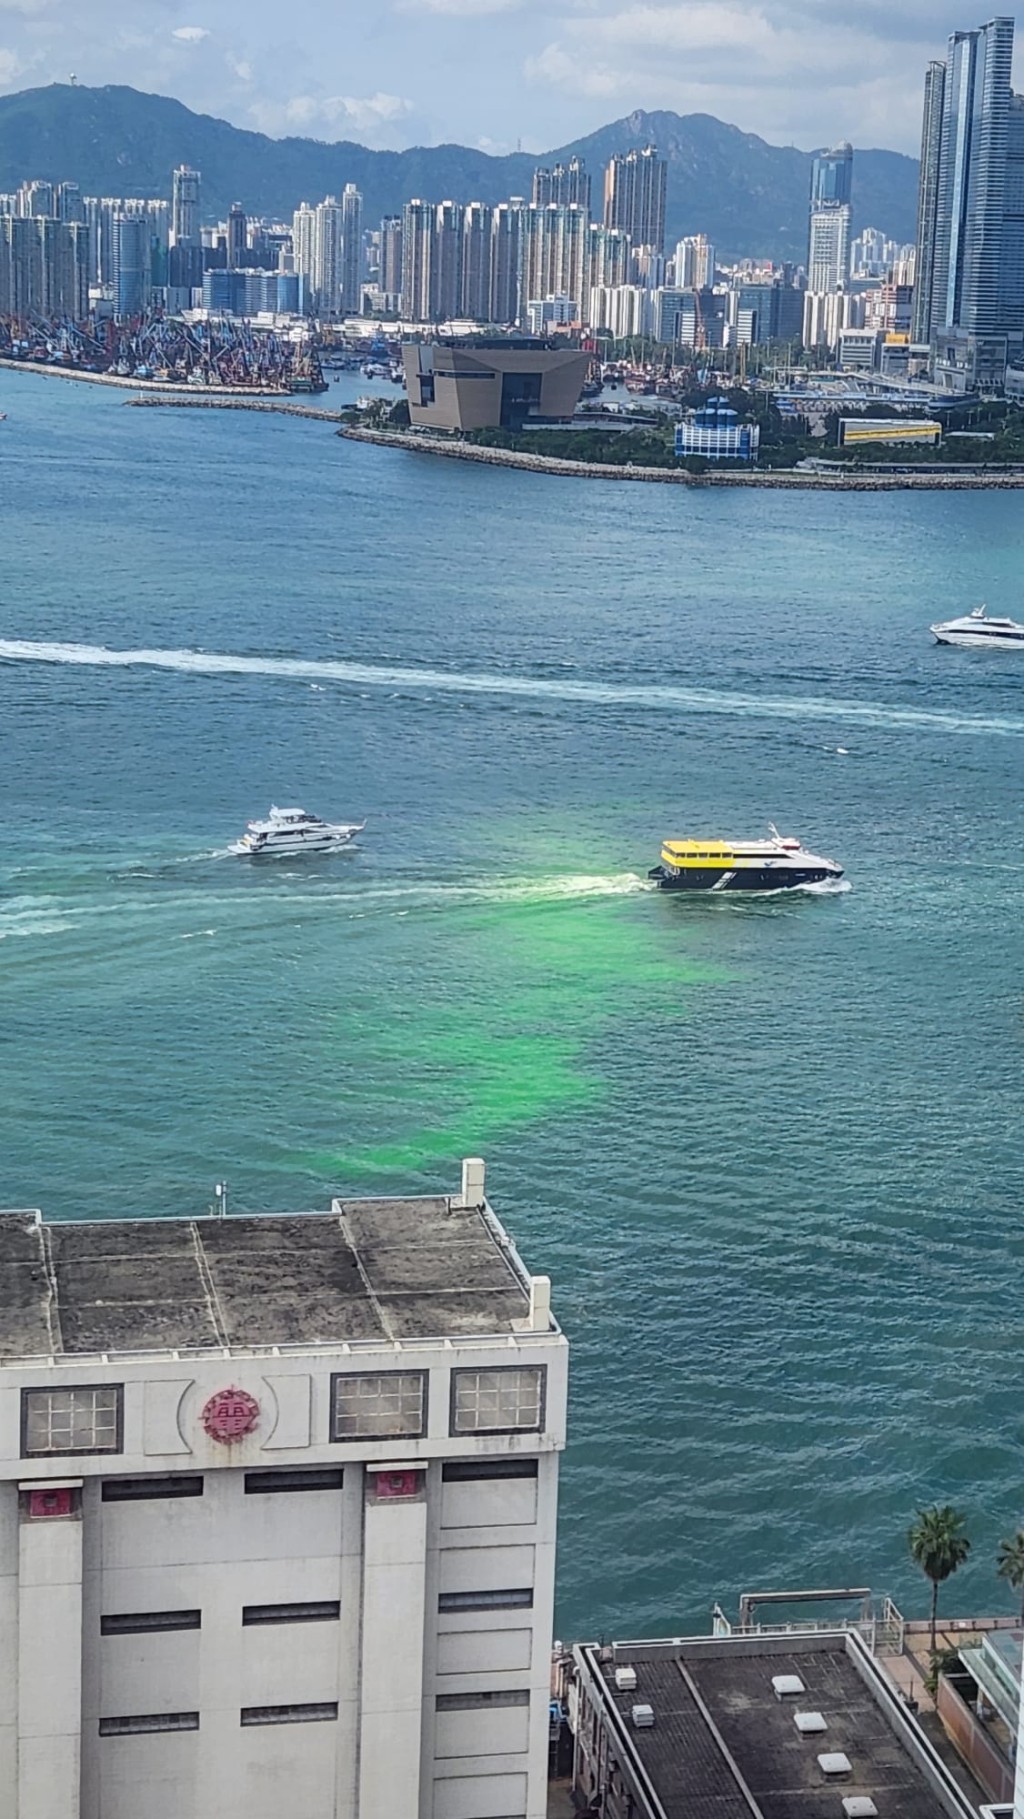 上周五有一片萤光绿水在上环对开的维港漂浮。